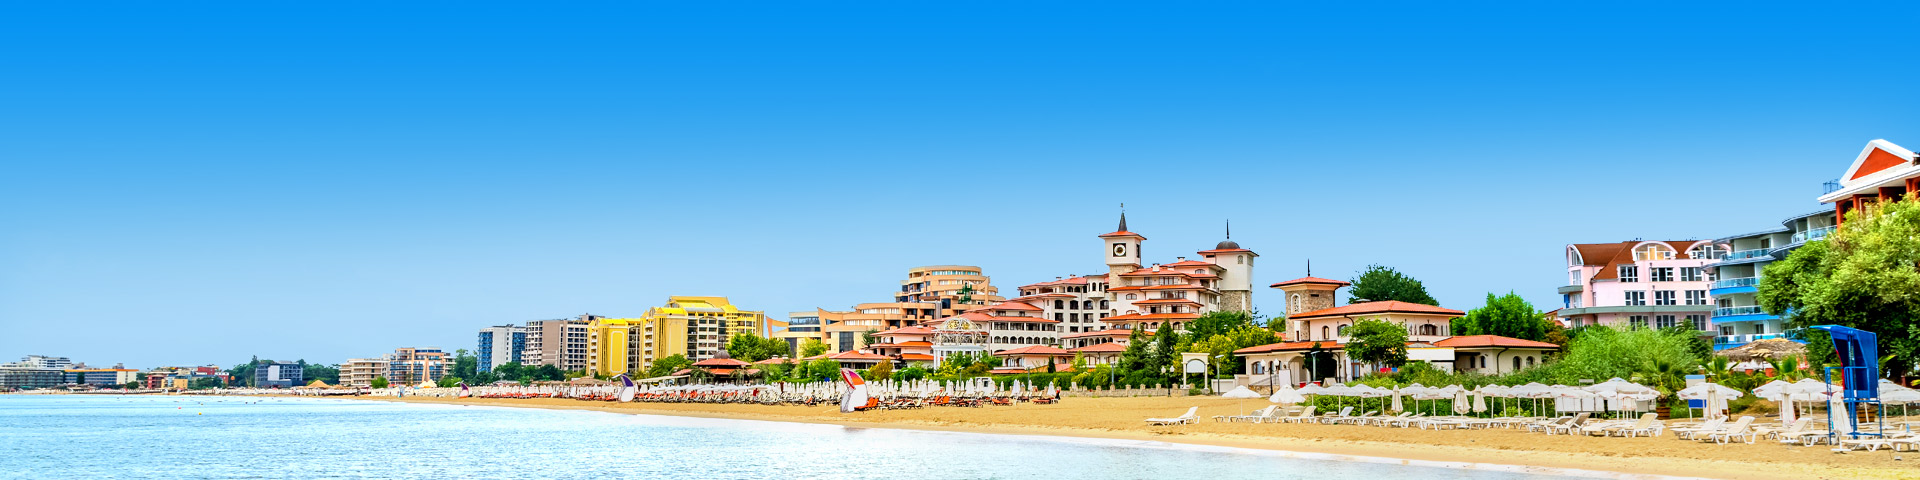 Uitzicht over het strand aan de Zwarte Zeekust met ligbedjes en gebouwen